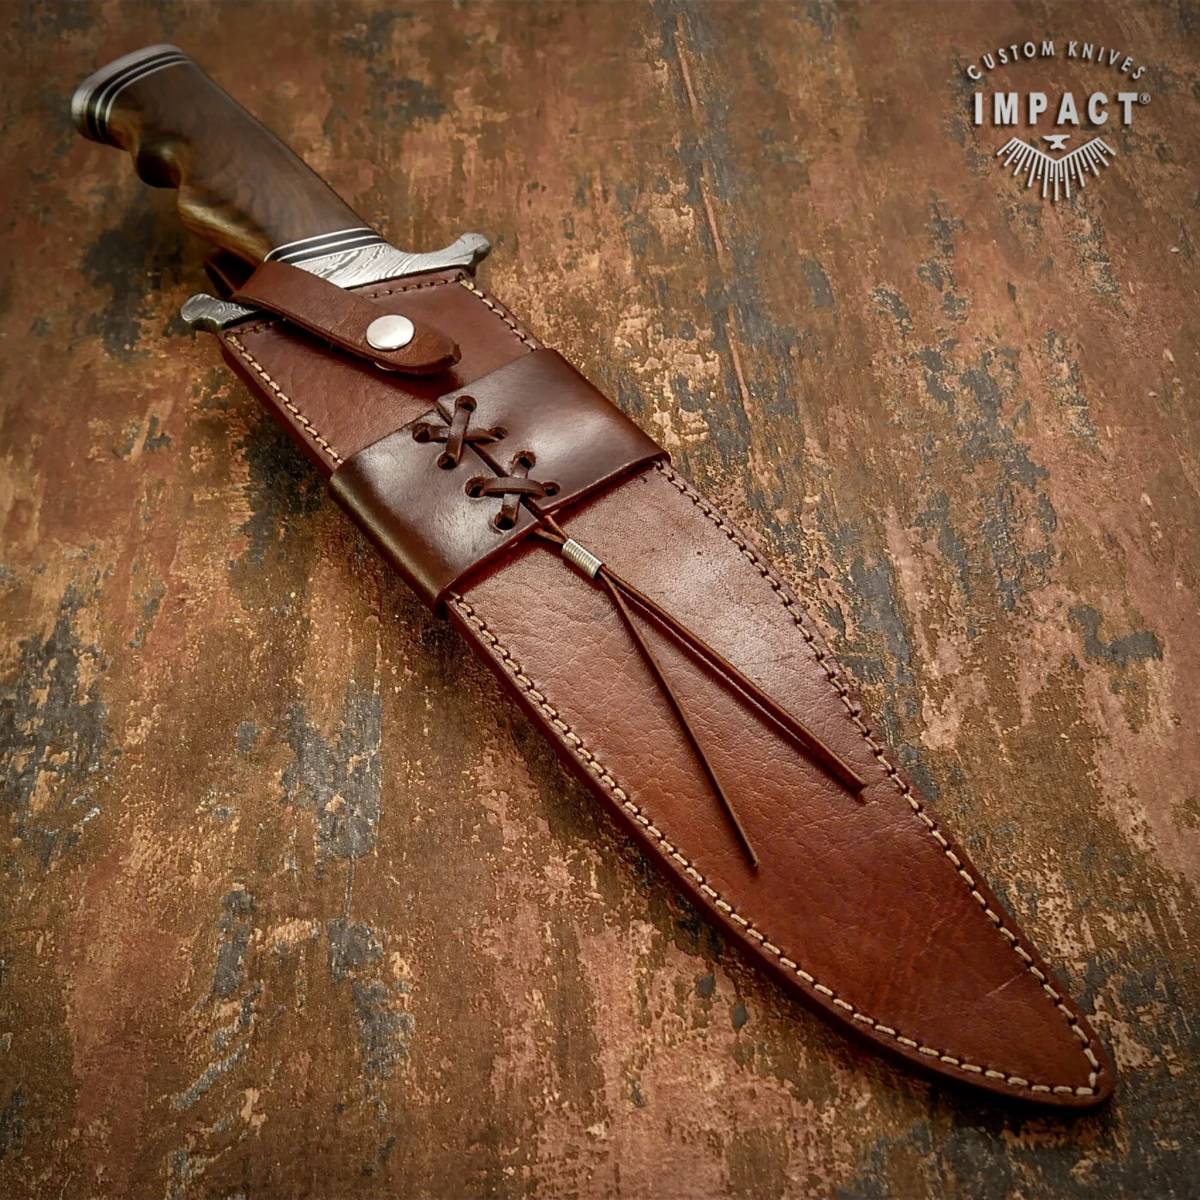 * общая длина 45.2cm Англия IMPACT производства Damas rental сталь нож custom монтировка деревянный руль уличный предотвращение бедствий Survival охота кемпинг ..